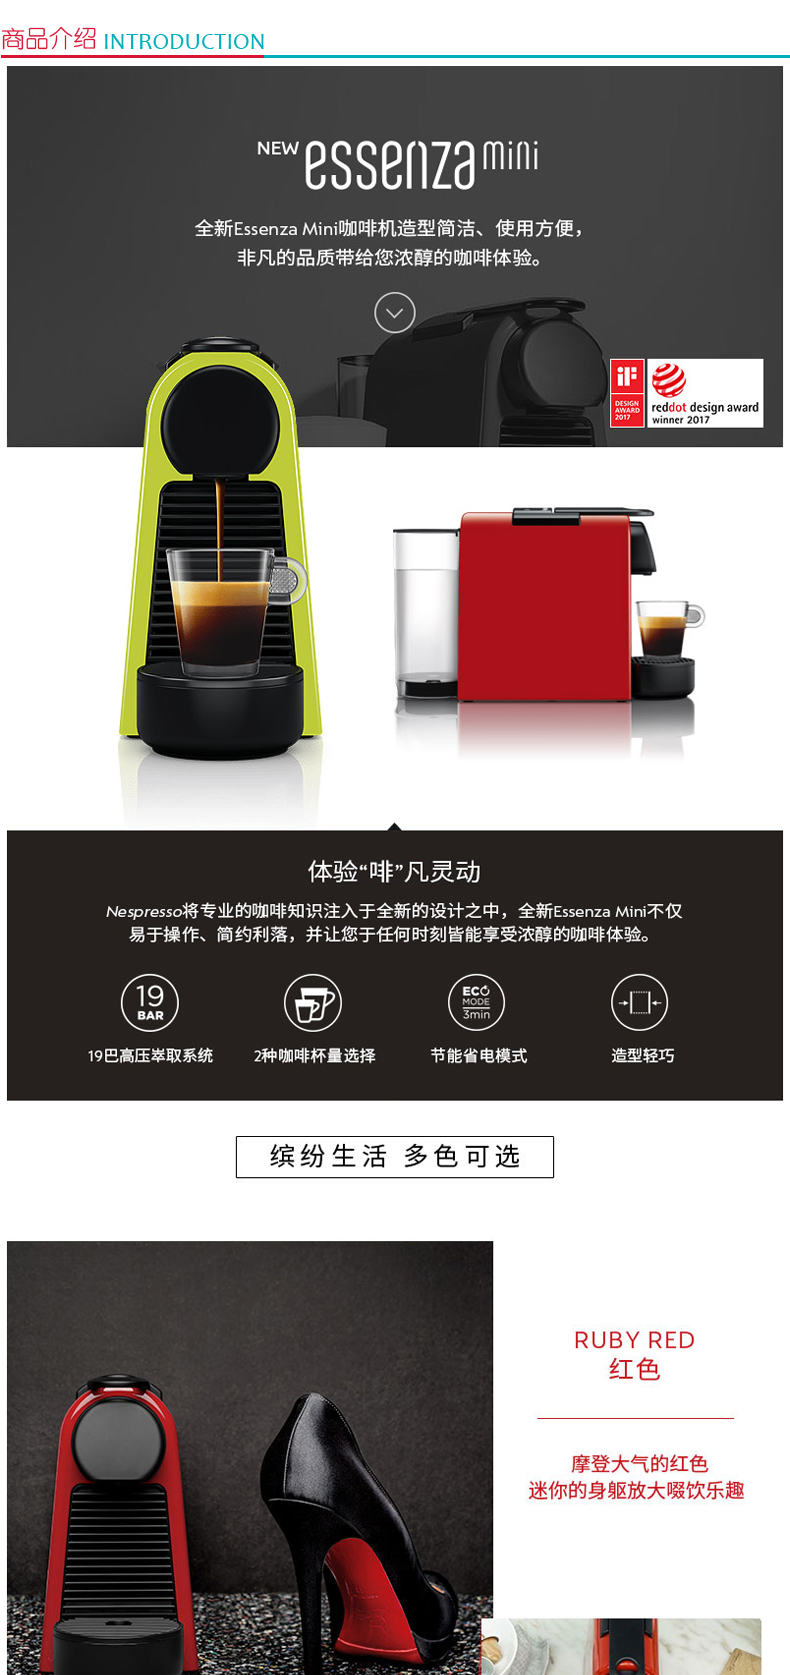 奈斯派索 Nespresso Essenza mini 全自动胶囊咖啡机 D30 (绿色)